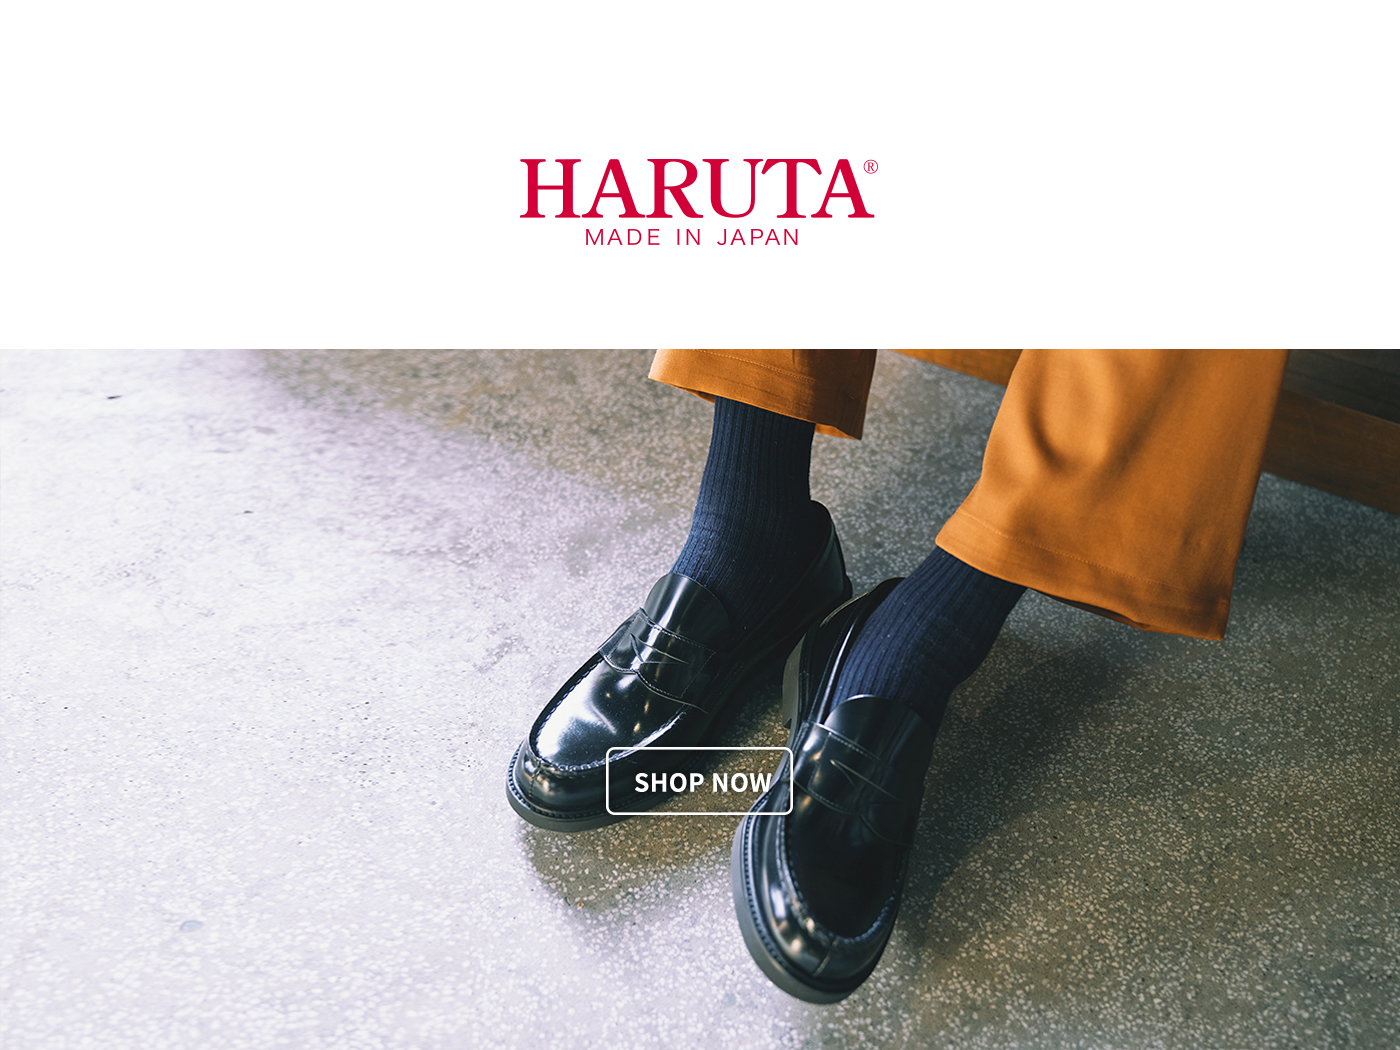 haruta,haruta評價,haruta皮鞋,haruta 日本,haruta 台灣, haruta jp,ハルタ製靴店,ハルタ